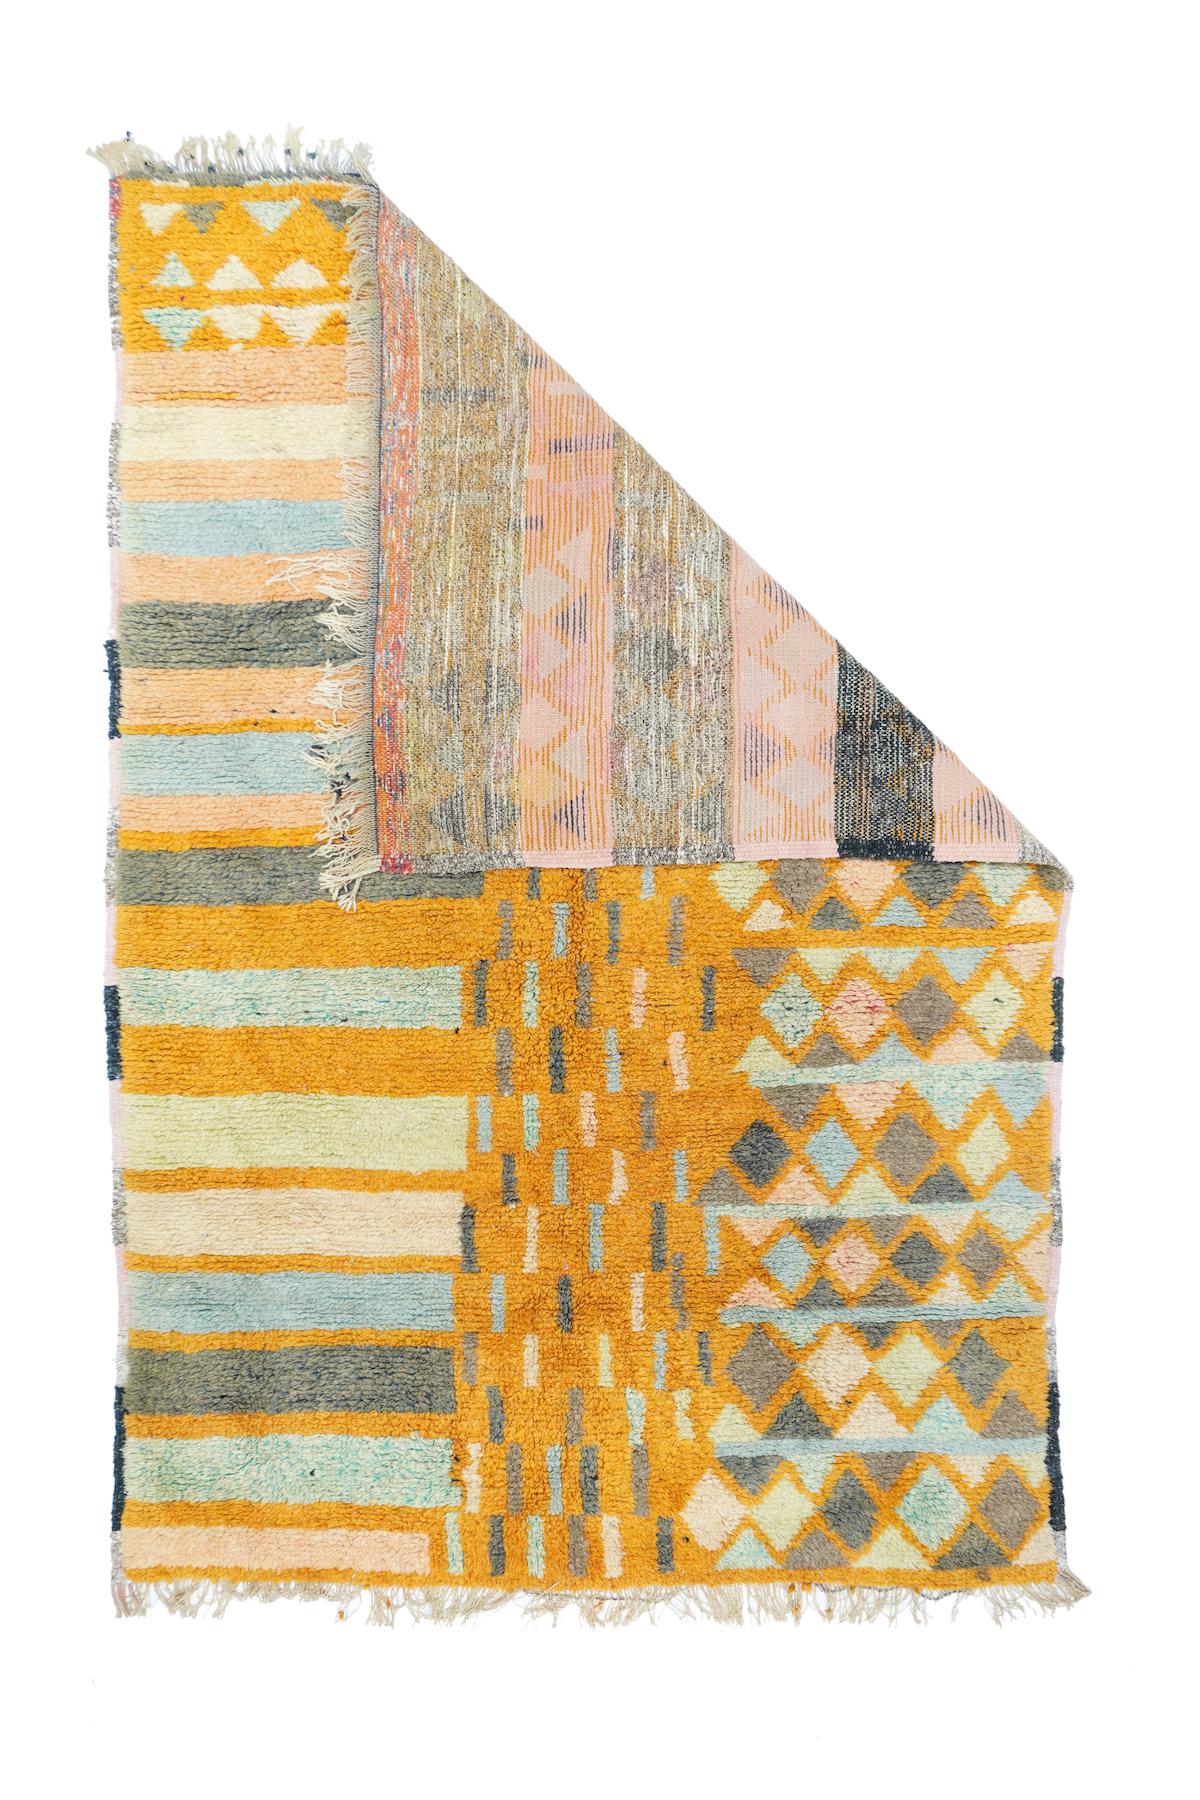 Vintage Morrocan Rug 4'10'' x 7'5''. Drei Teppiche in einem. Horizontale Bänder, ein zentraler goldener Fluss aus Strichen und eine Seitenwand mit Rautenreihen. An jeder Webkante befinden sich schwarze Streifen. Grobe Webart auf Wolle mit hohem